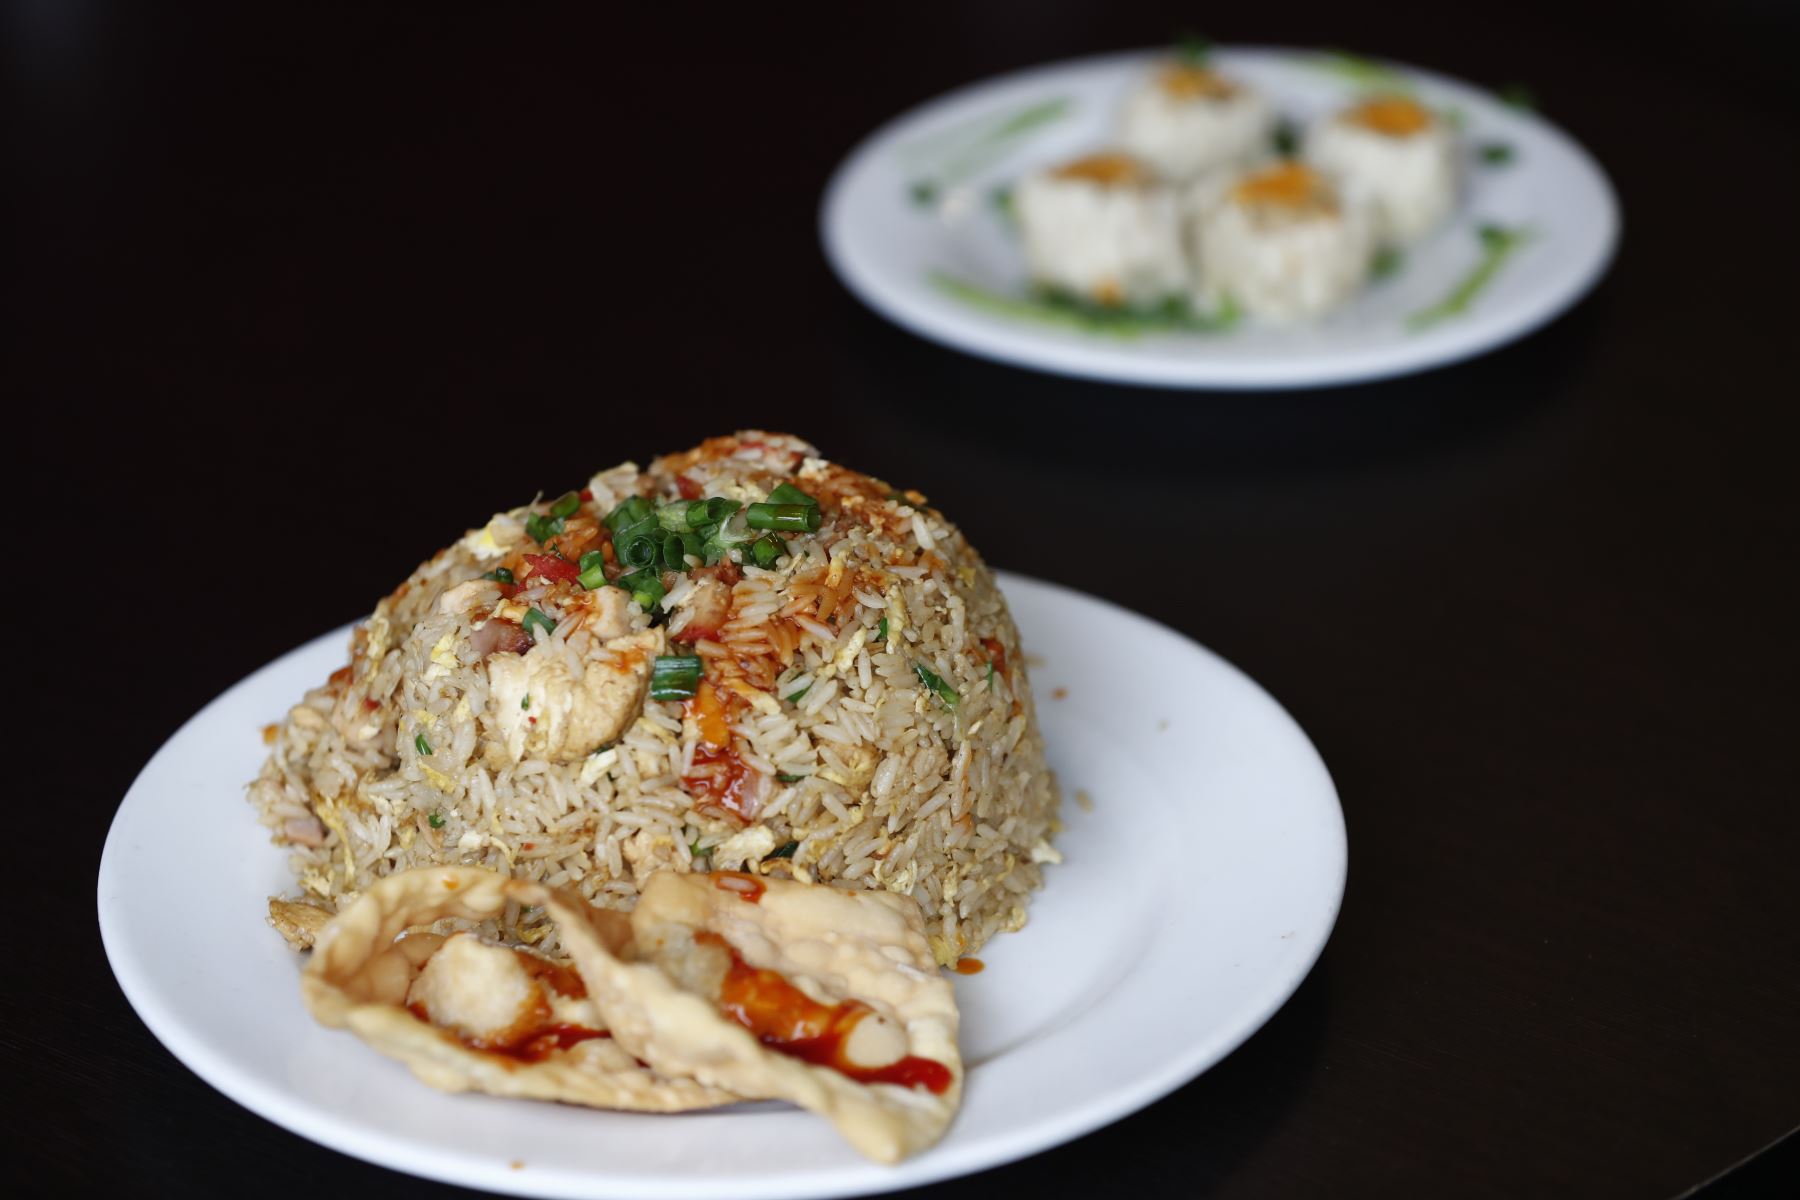 Este es el arroz chaufa de chancho y pato del Chifa San Joy Lao de Surco, el cual obtuvo el primer puesto en un importante certamen gastronómico internacional. Foto: ANDINA/Daniel Bracamonte